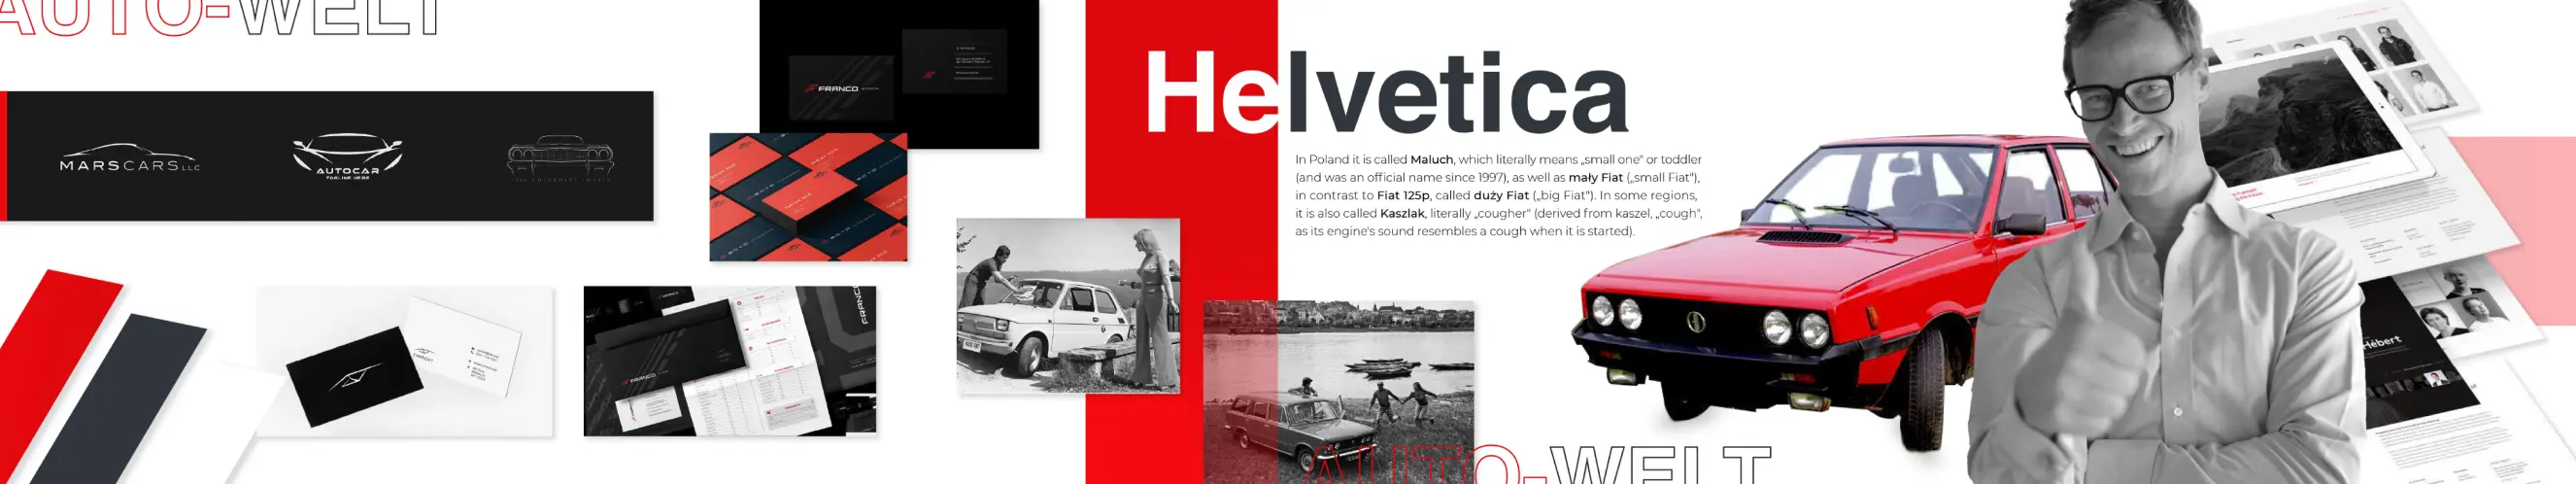 Zbiór elementów interfejsu, kolorów, typografii, zdjęć pokazujących czerwono-czarny styl wizualny dla marki Auto-Welt